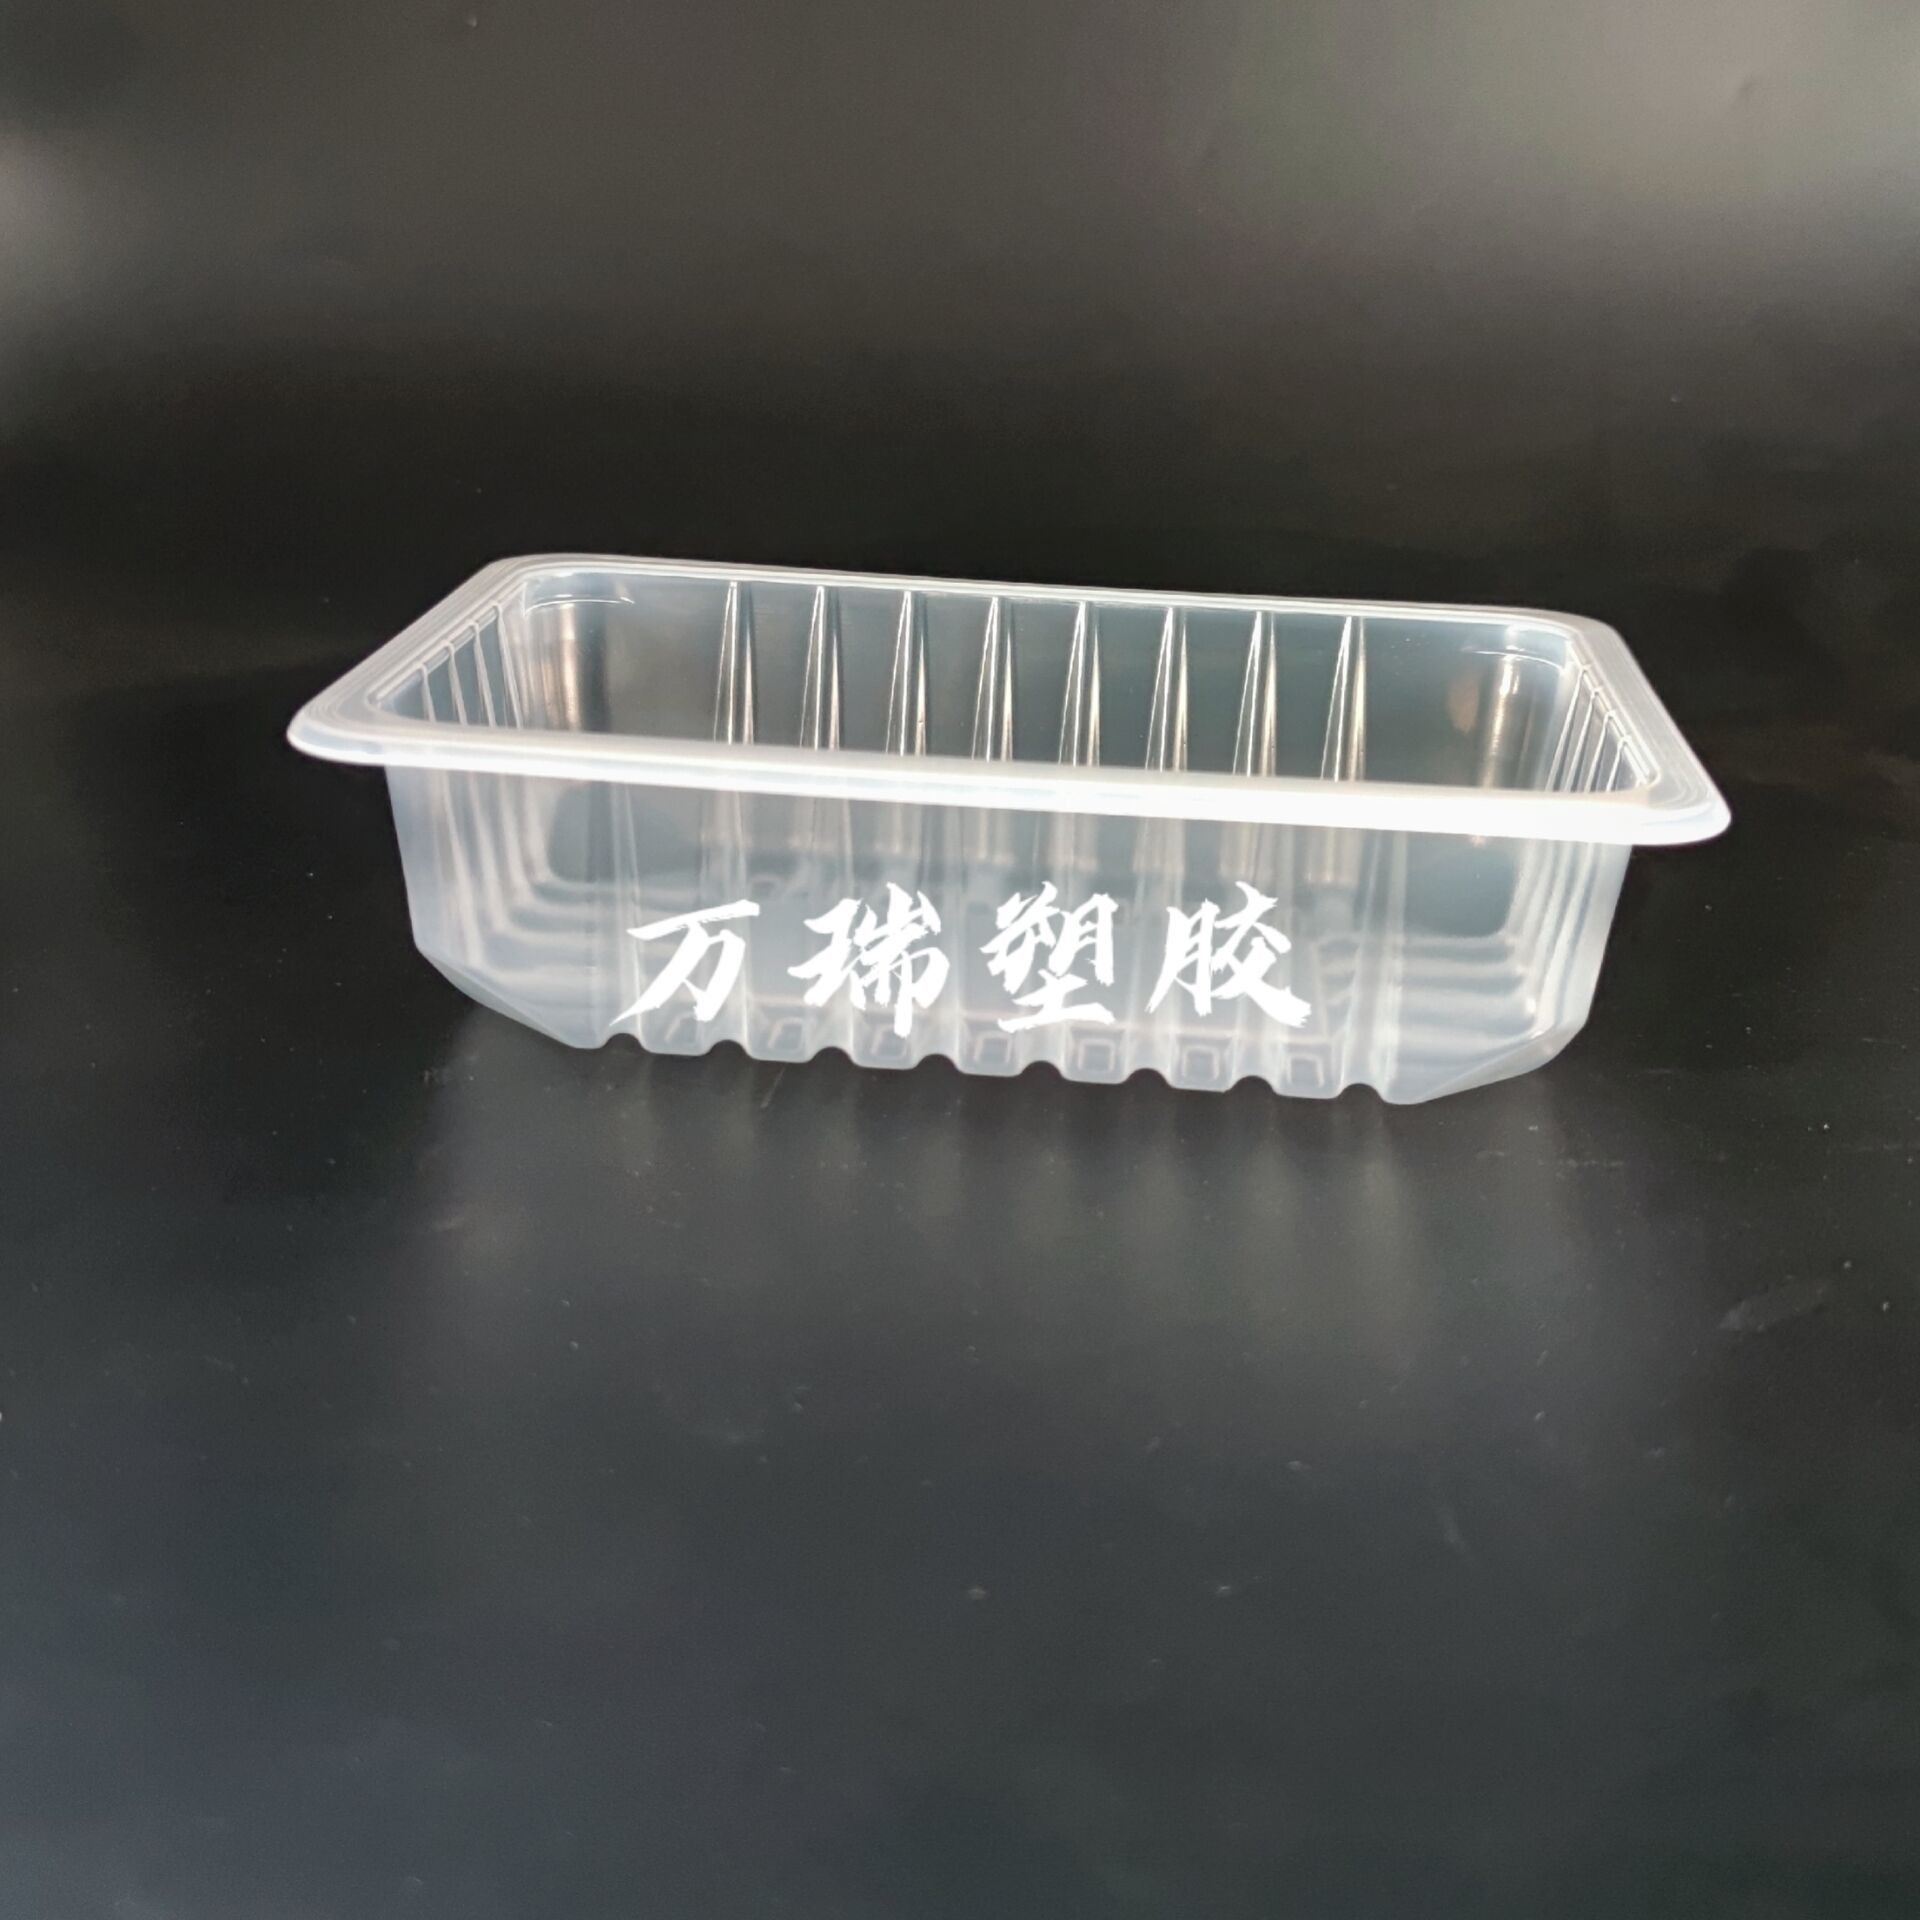 万瑞塑胶冷冻豆制品耐低温塑料盒聚美盒豆制品包装供应厂家芽肧包装可封口塑料盒0c01